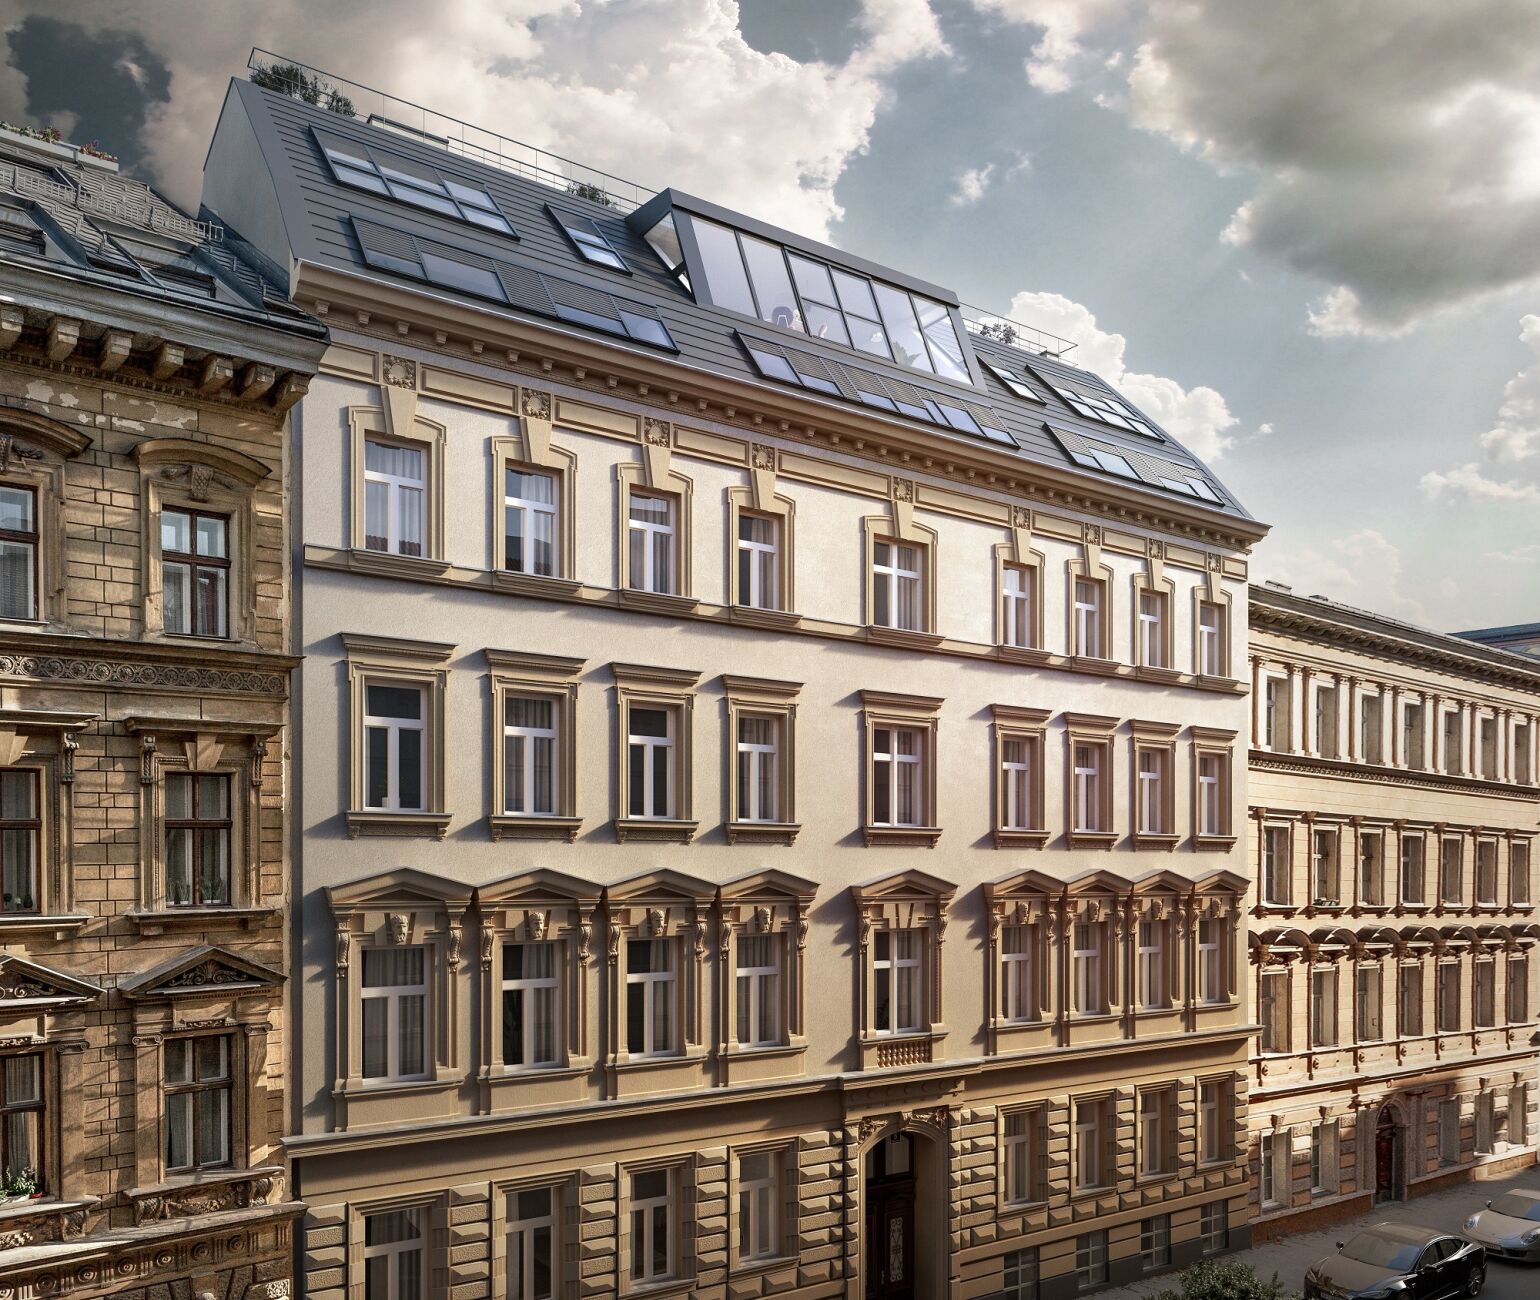 Das 3SI Projekt „The Heritage“ in der Wiener Dißlergasse, unweit der Wiener Innenstadt, wurde mit dem European Property Award 2022 in der Kategorie „Residential Redevelopment/Renovation“ (Sanierung/Renovierung von Wohngebäuden) ausgezeichnet.